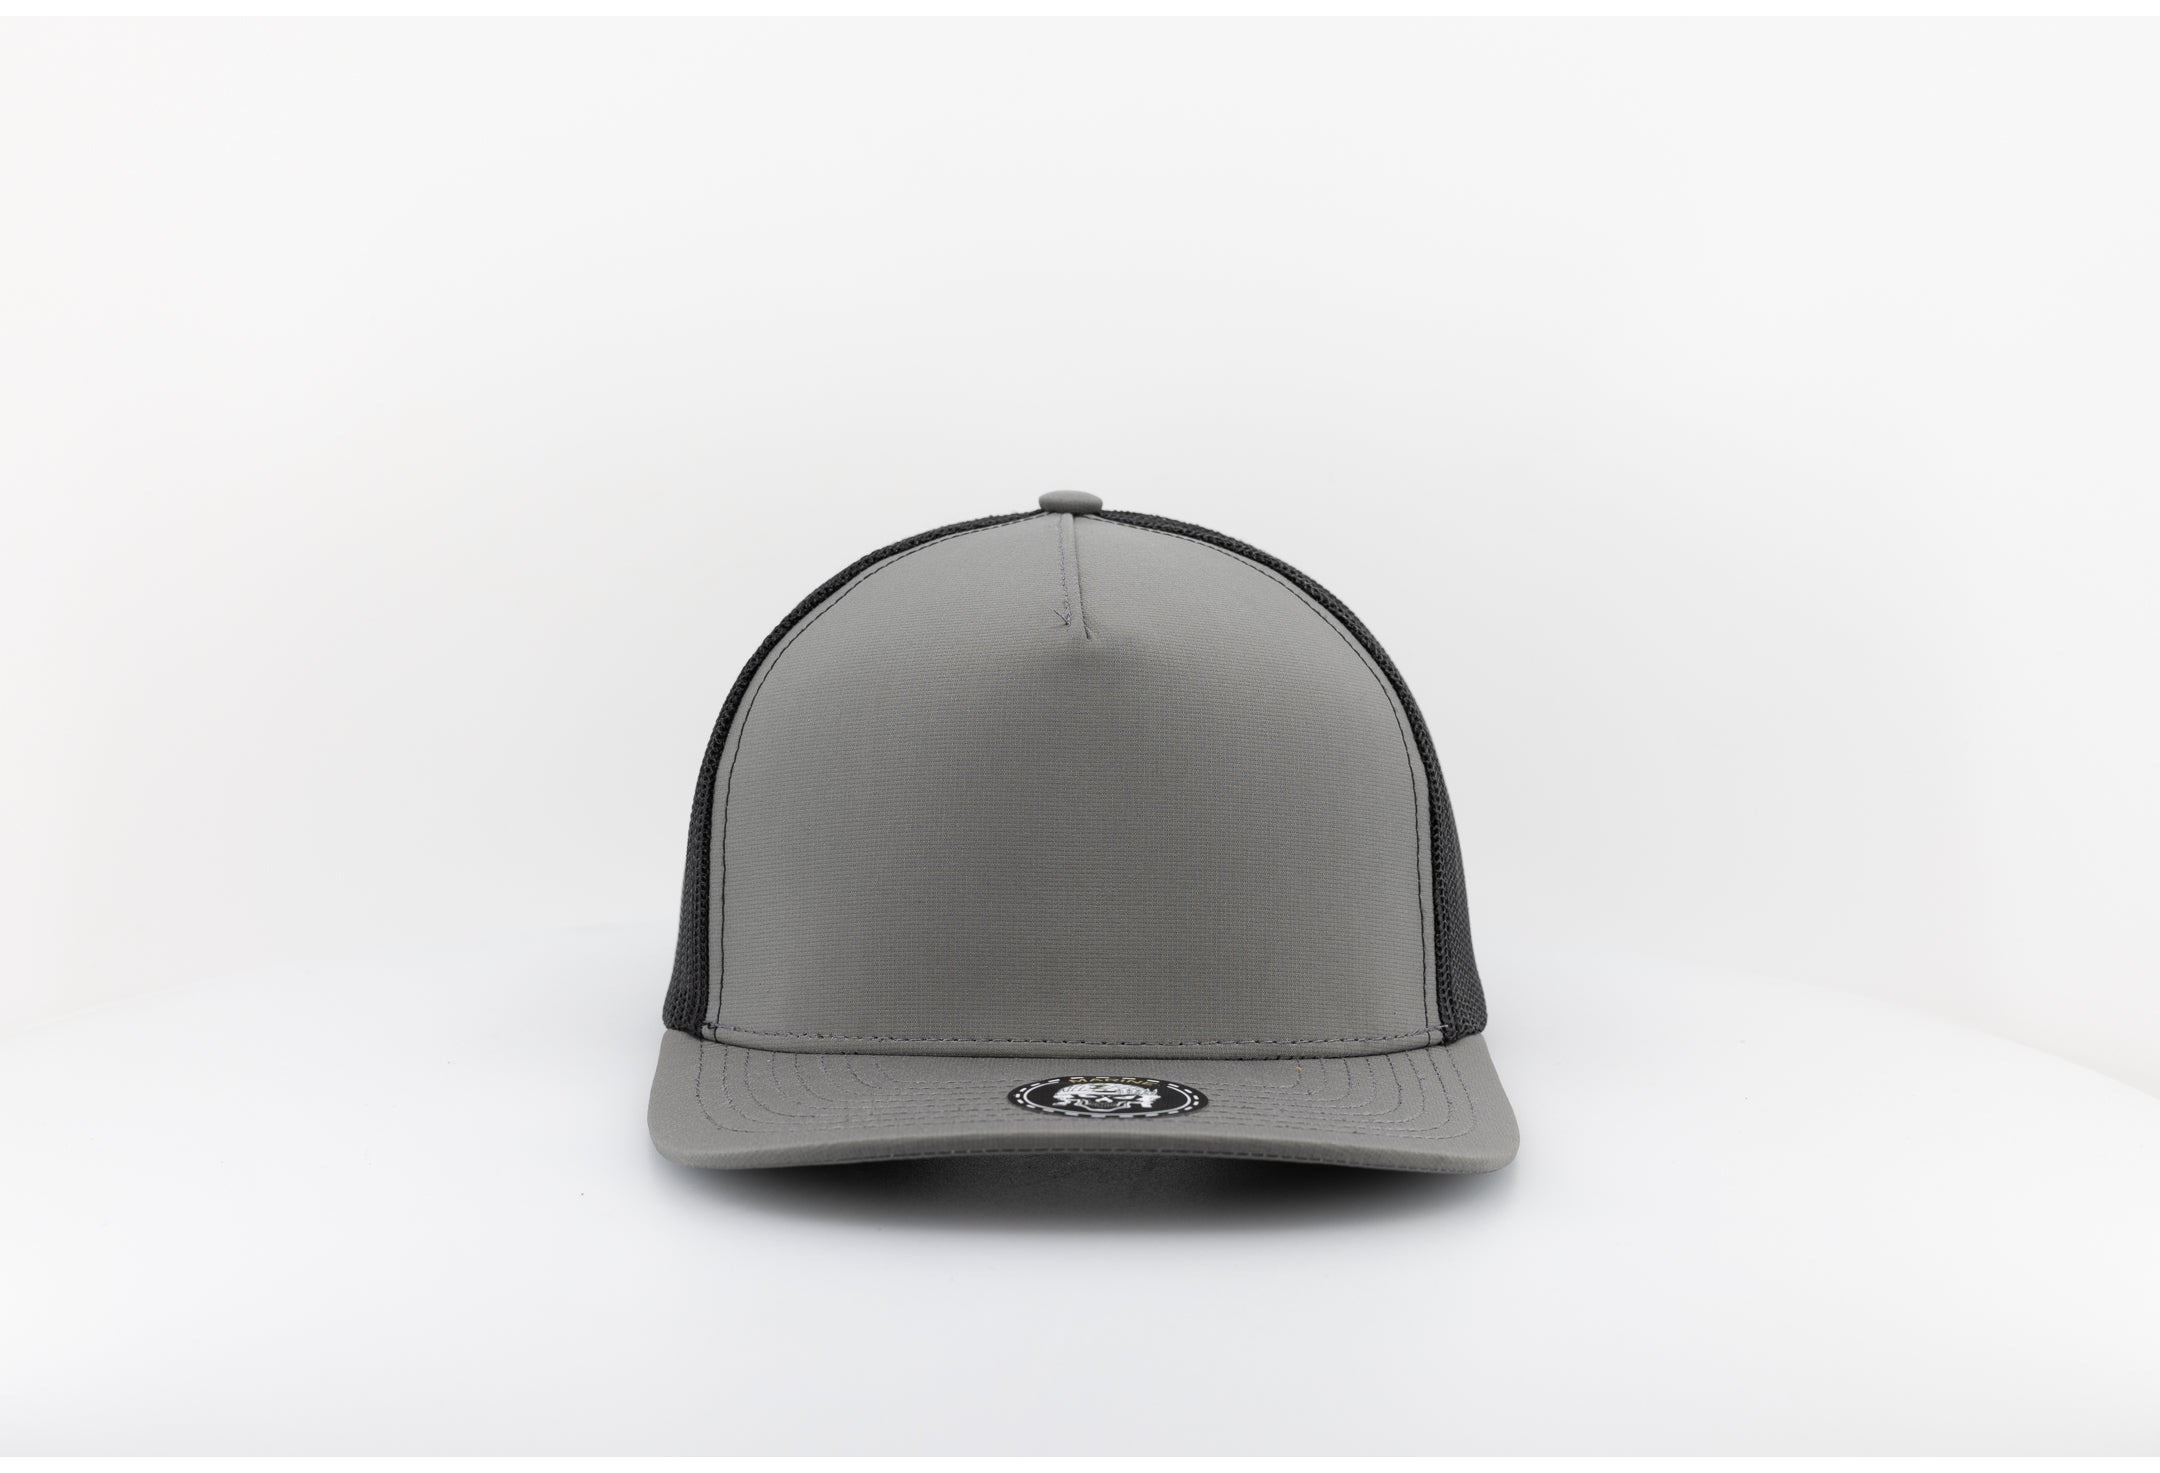 MARINE Blank-Water Repellent hat-Zapped Headwear-Steel Green/Black-Zapped Headwear